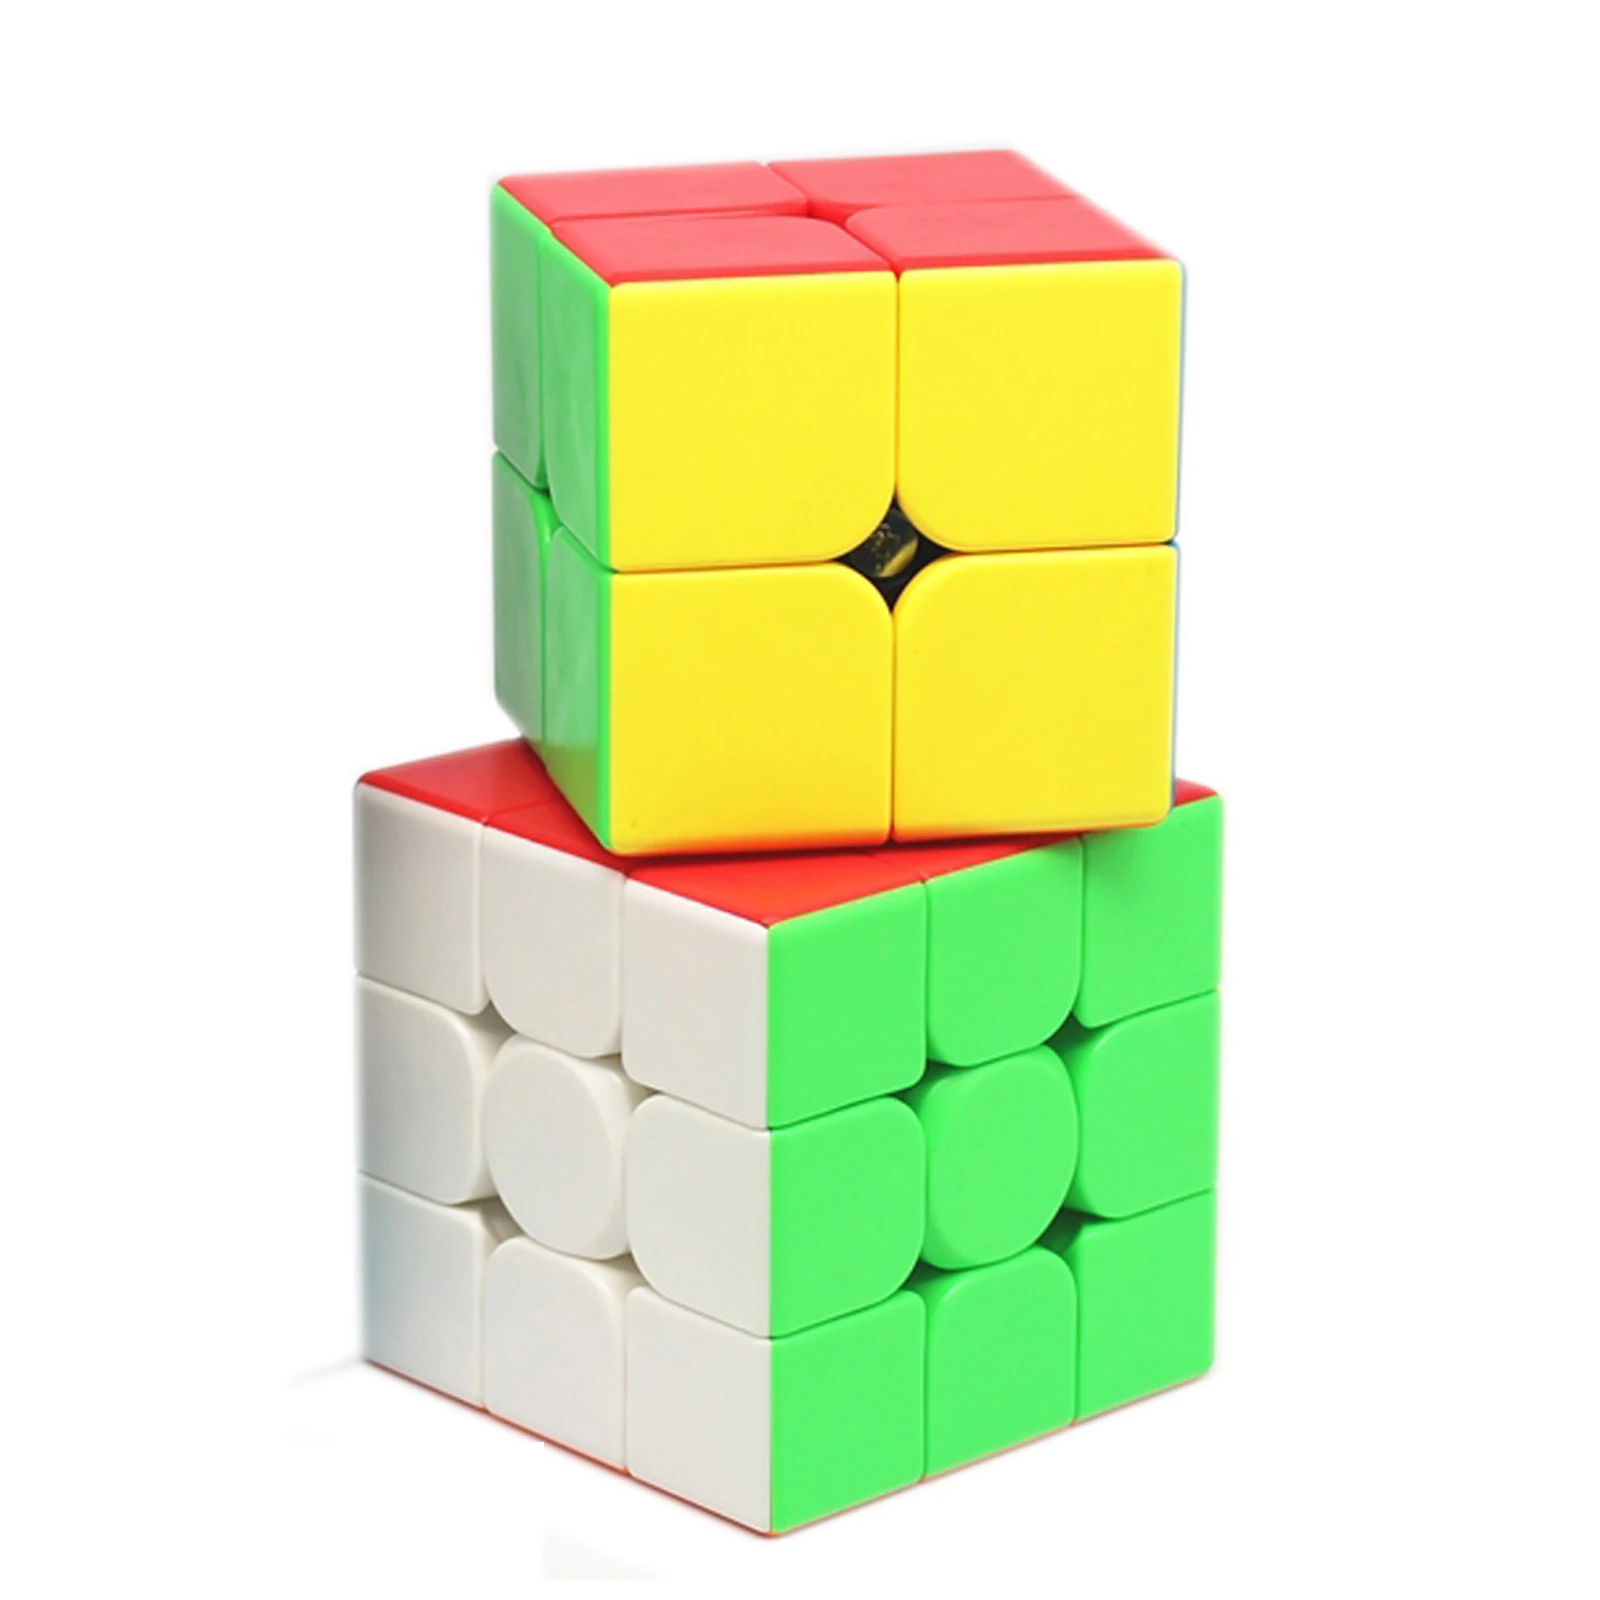 Moyu-Set de cubos mÃ¡gicos para niÃ±os, juego de Cubo mÃ¡gico, MofangJiaoshi 2x2 3x3 cubo rubik, paquete de 2 unids/set